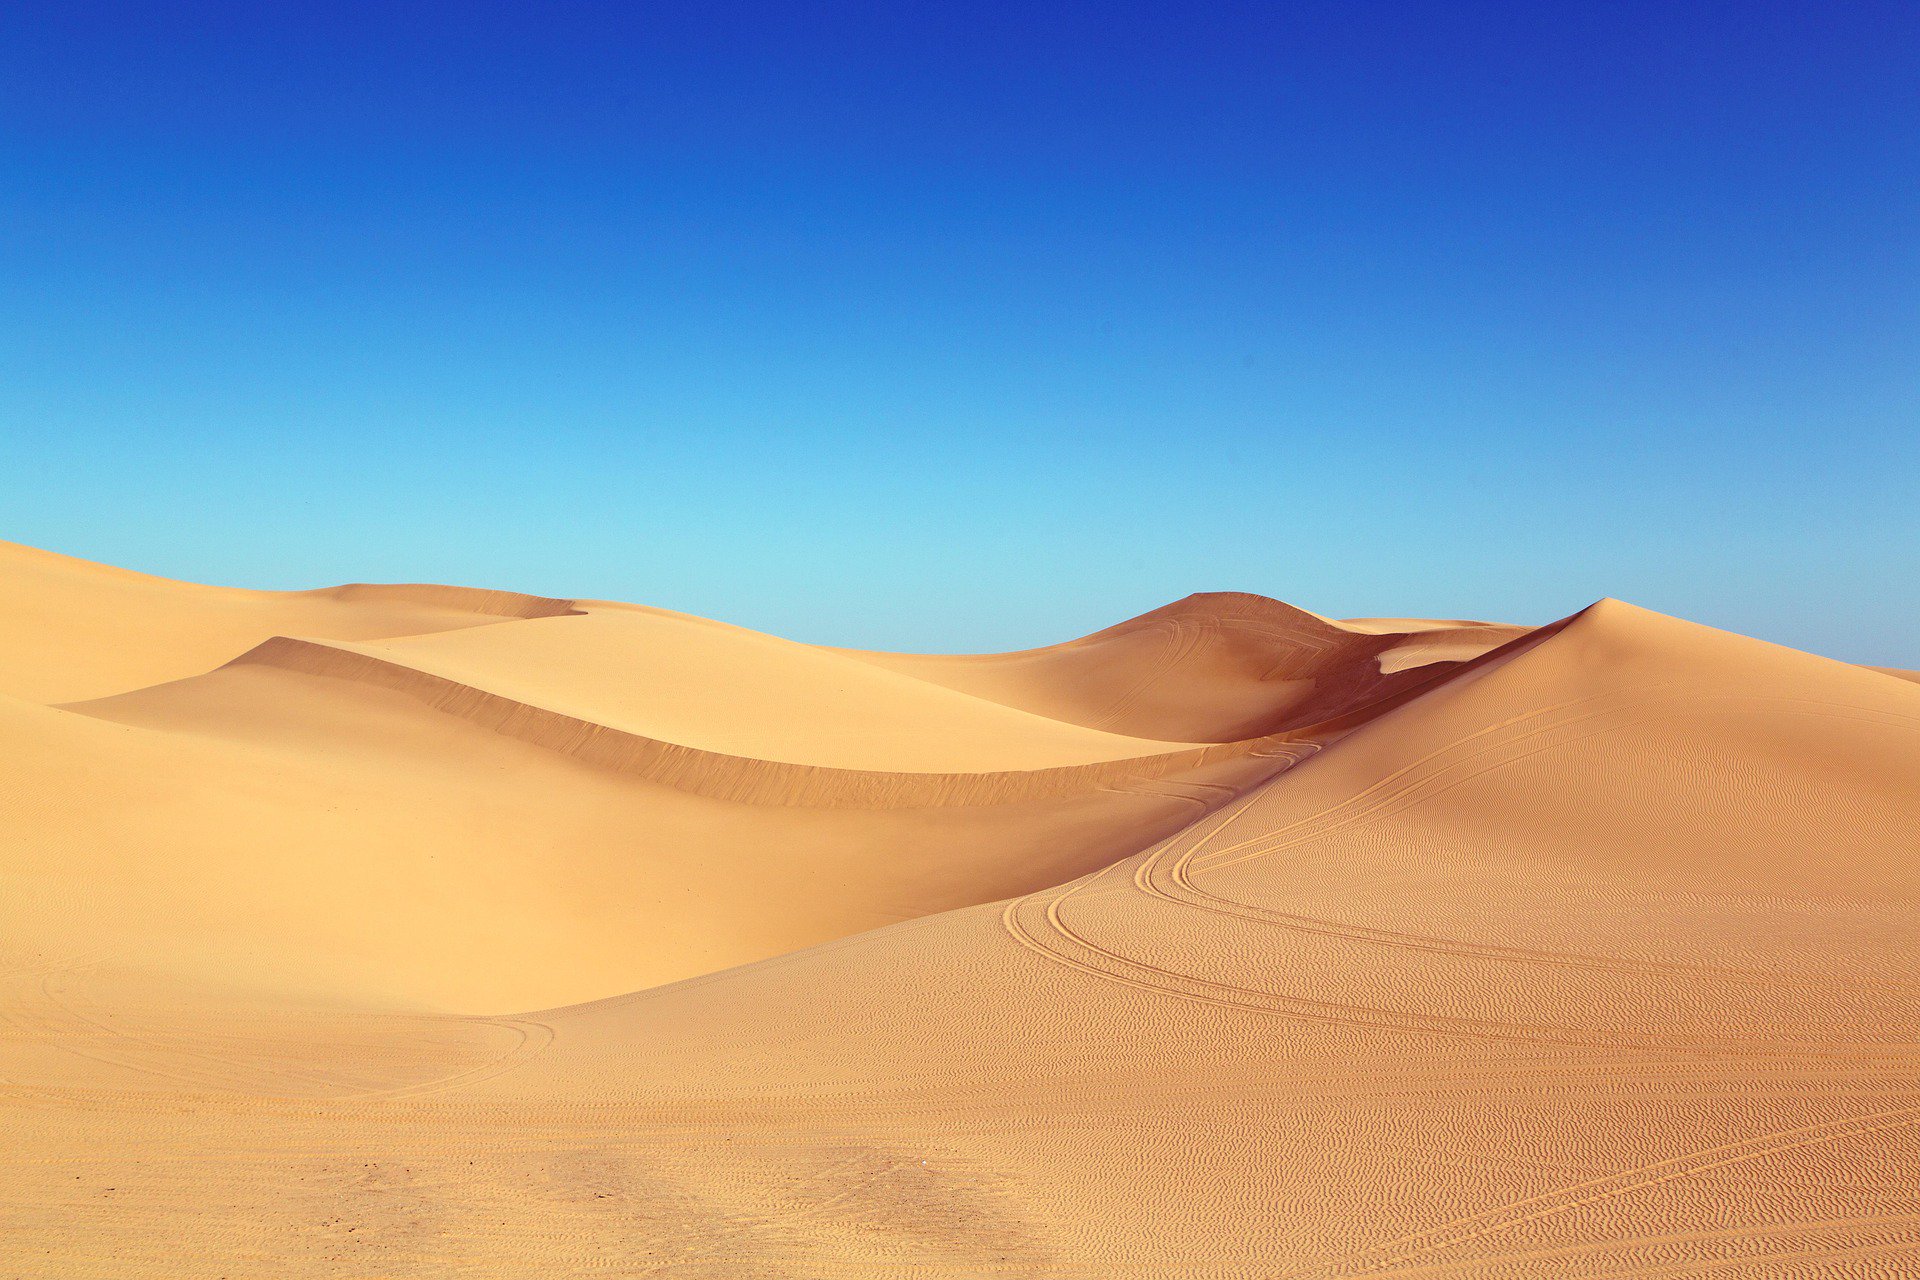 HD Wallpaper - #desert #summer #sand #hills #sky #blue # wallpaper #nature #photography #photo #HDWallpaper